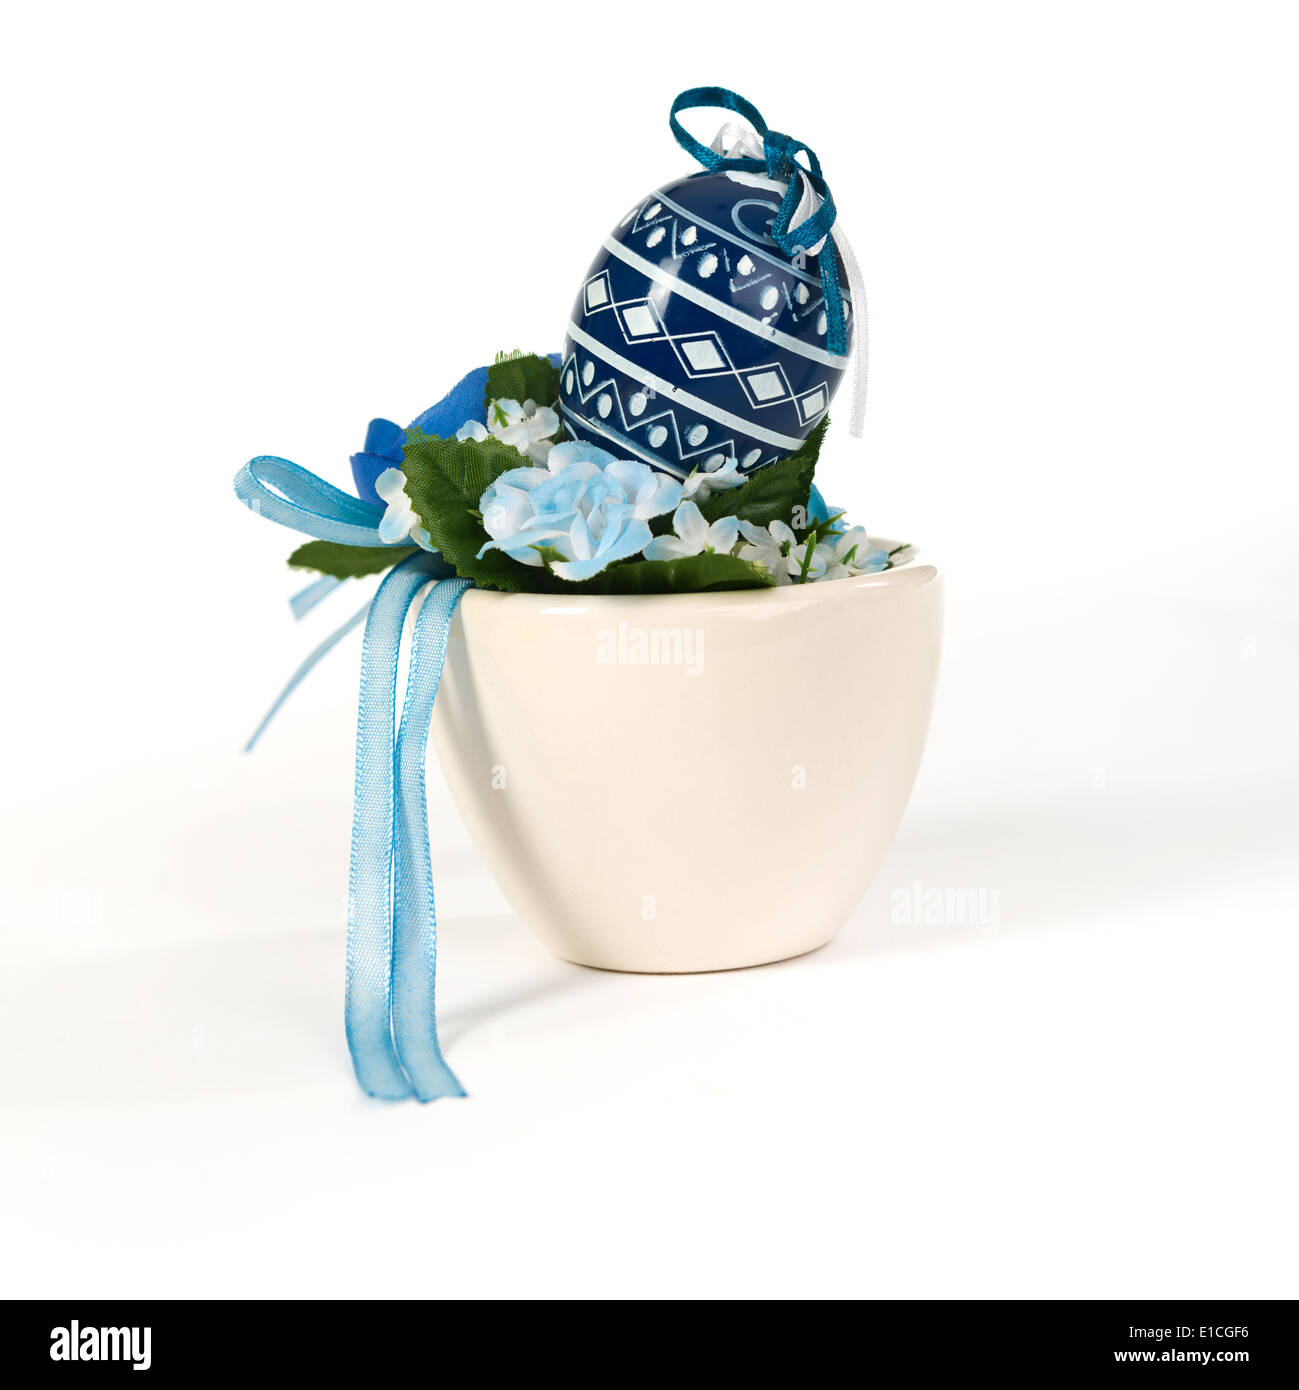 Ostern traditionell blau weiß bemalte Ostereier malen Ei Ostern Deko Osterei in der Tasse Stockfoto